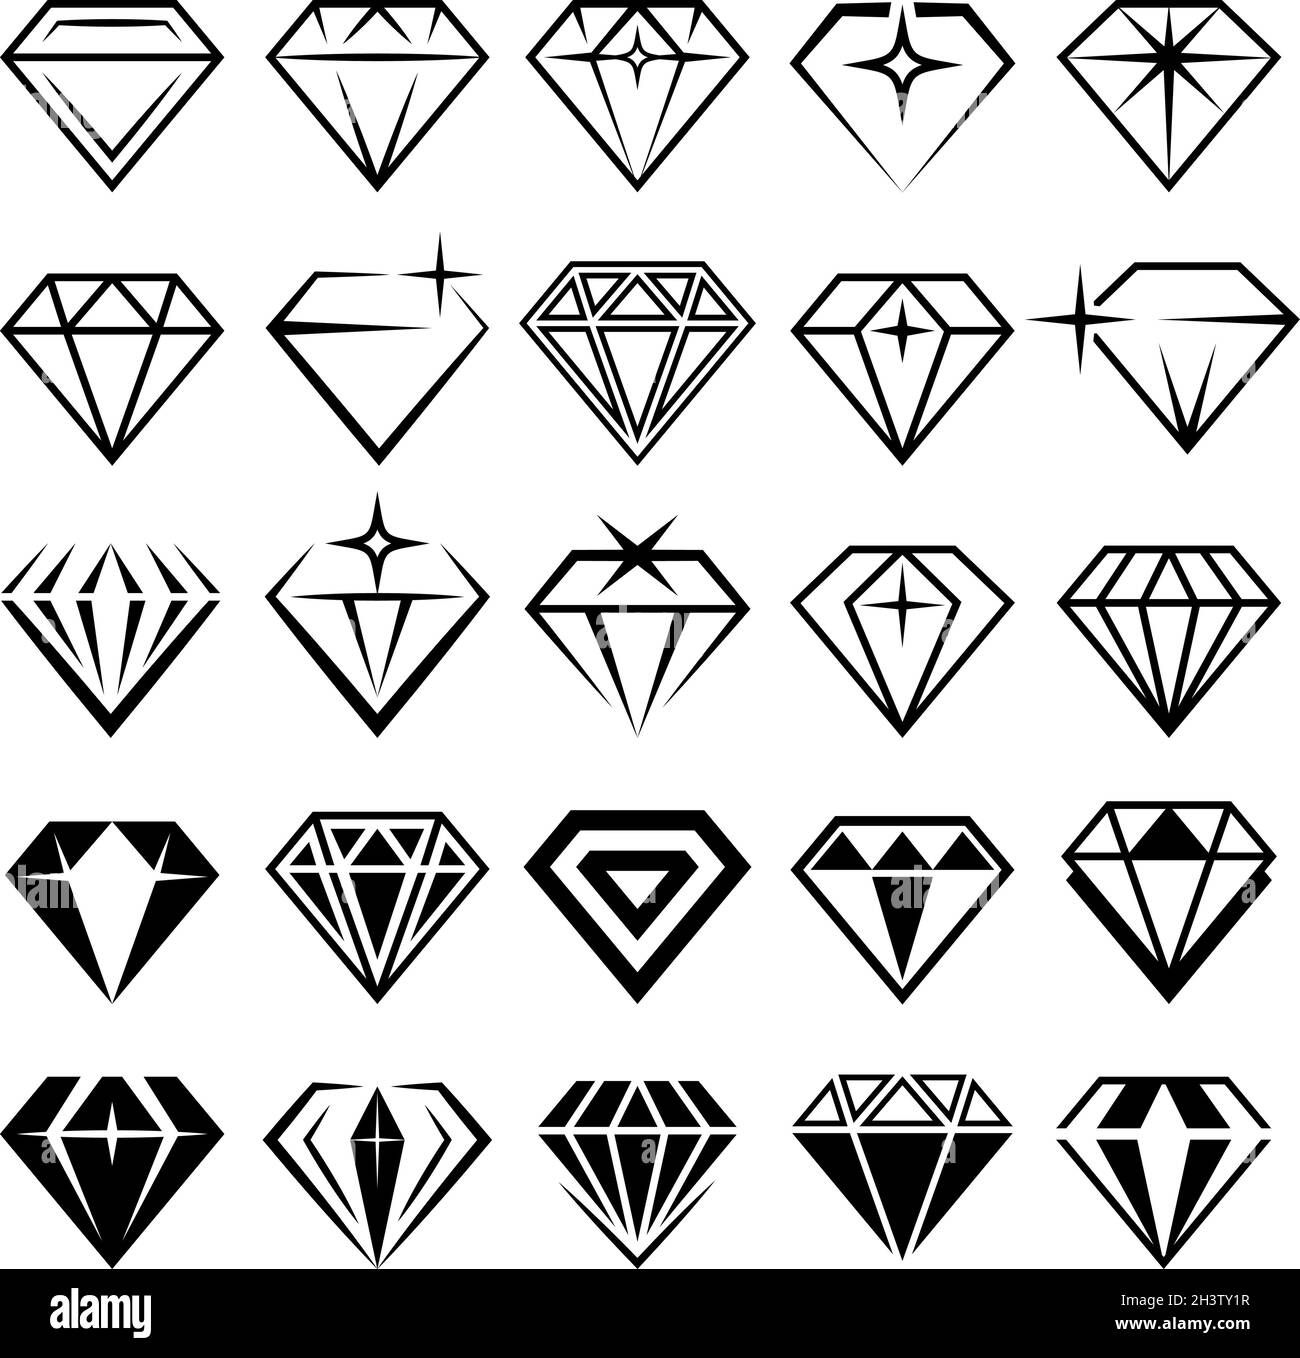 Schmuck-Set. Stilisierte Diamanten Sammlung aktuelle Vektor-schwarze Symbole Stock Vektor